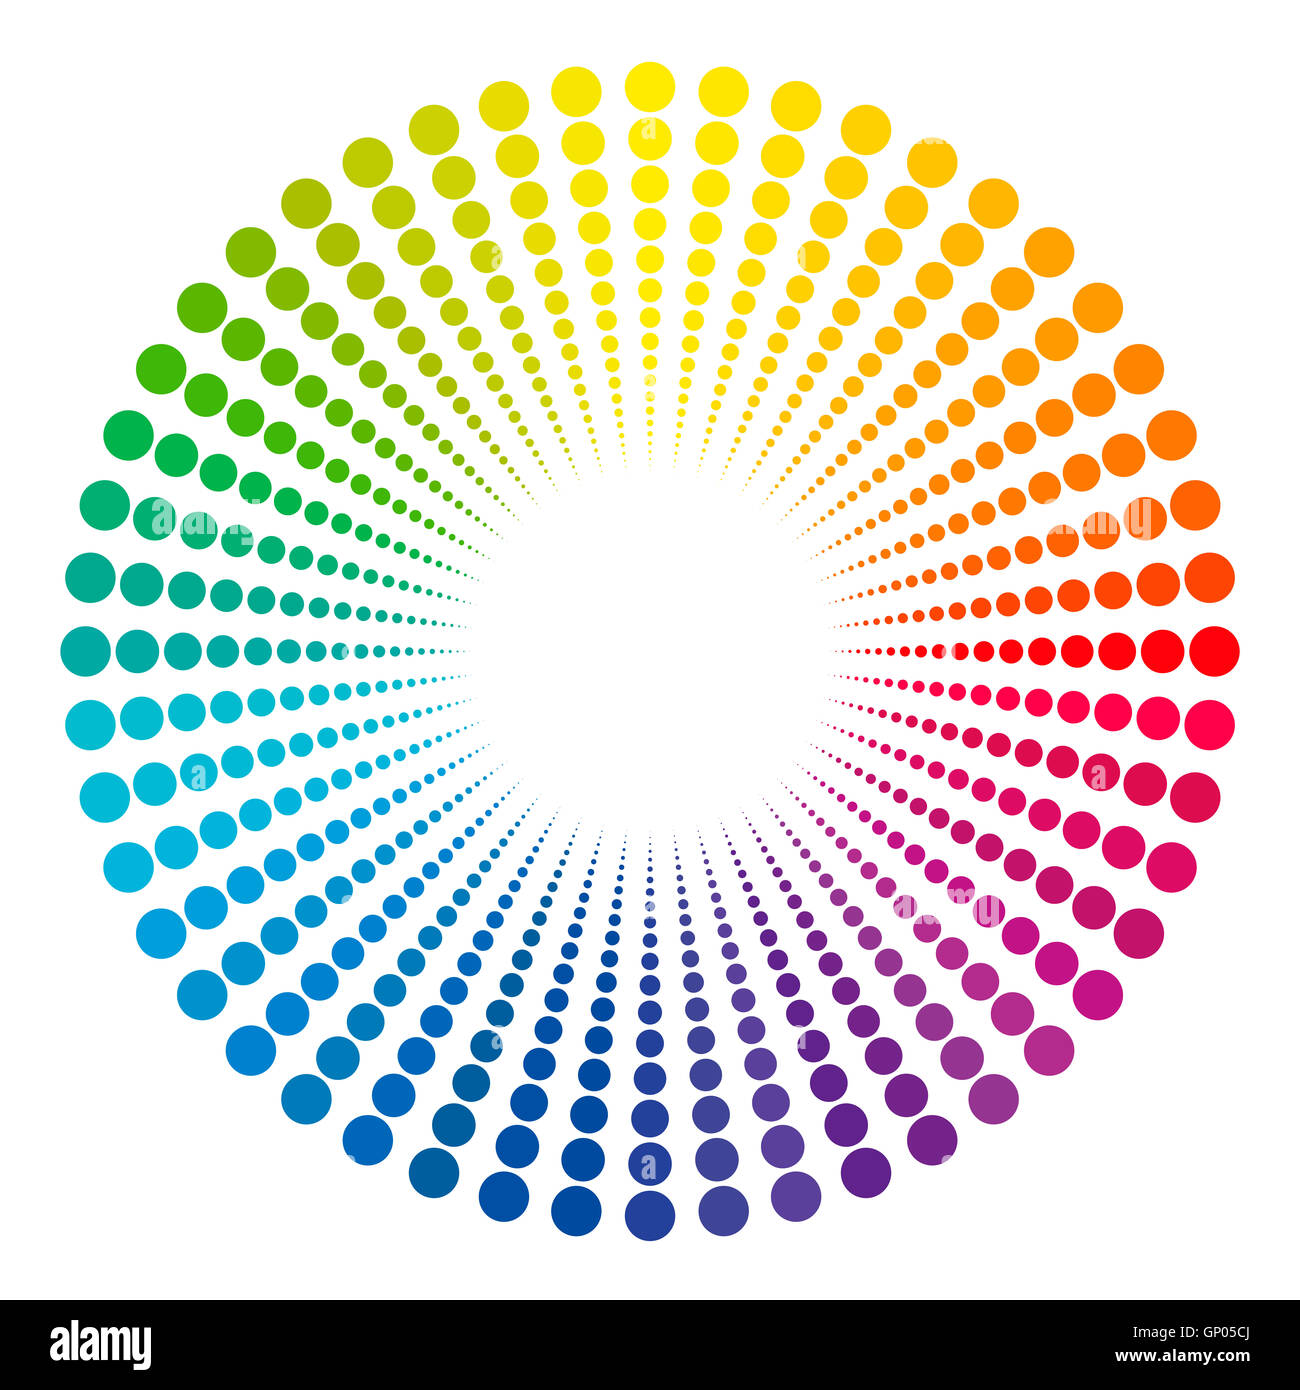 Per vedere la luce alla fine del tunnel - simbolicamente rappresentato con un arcobaleno colorato modello a punti. Foto Stock